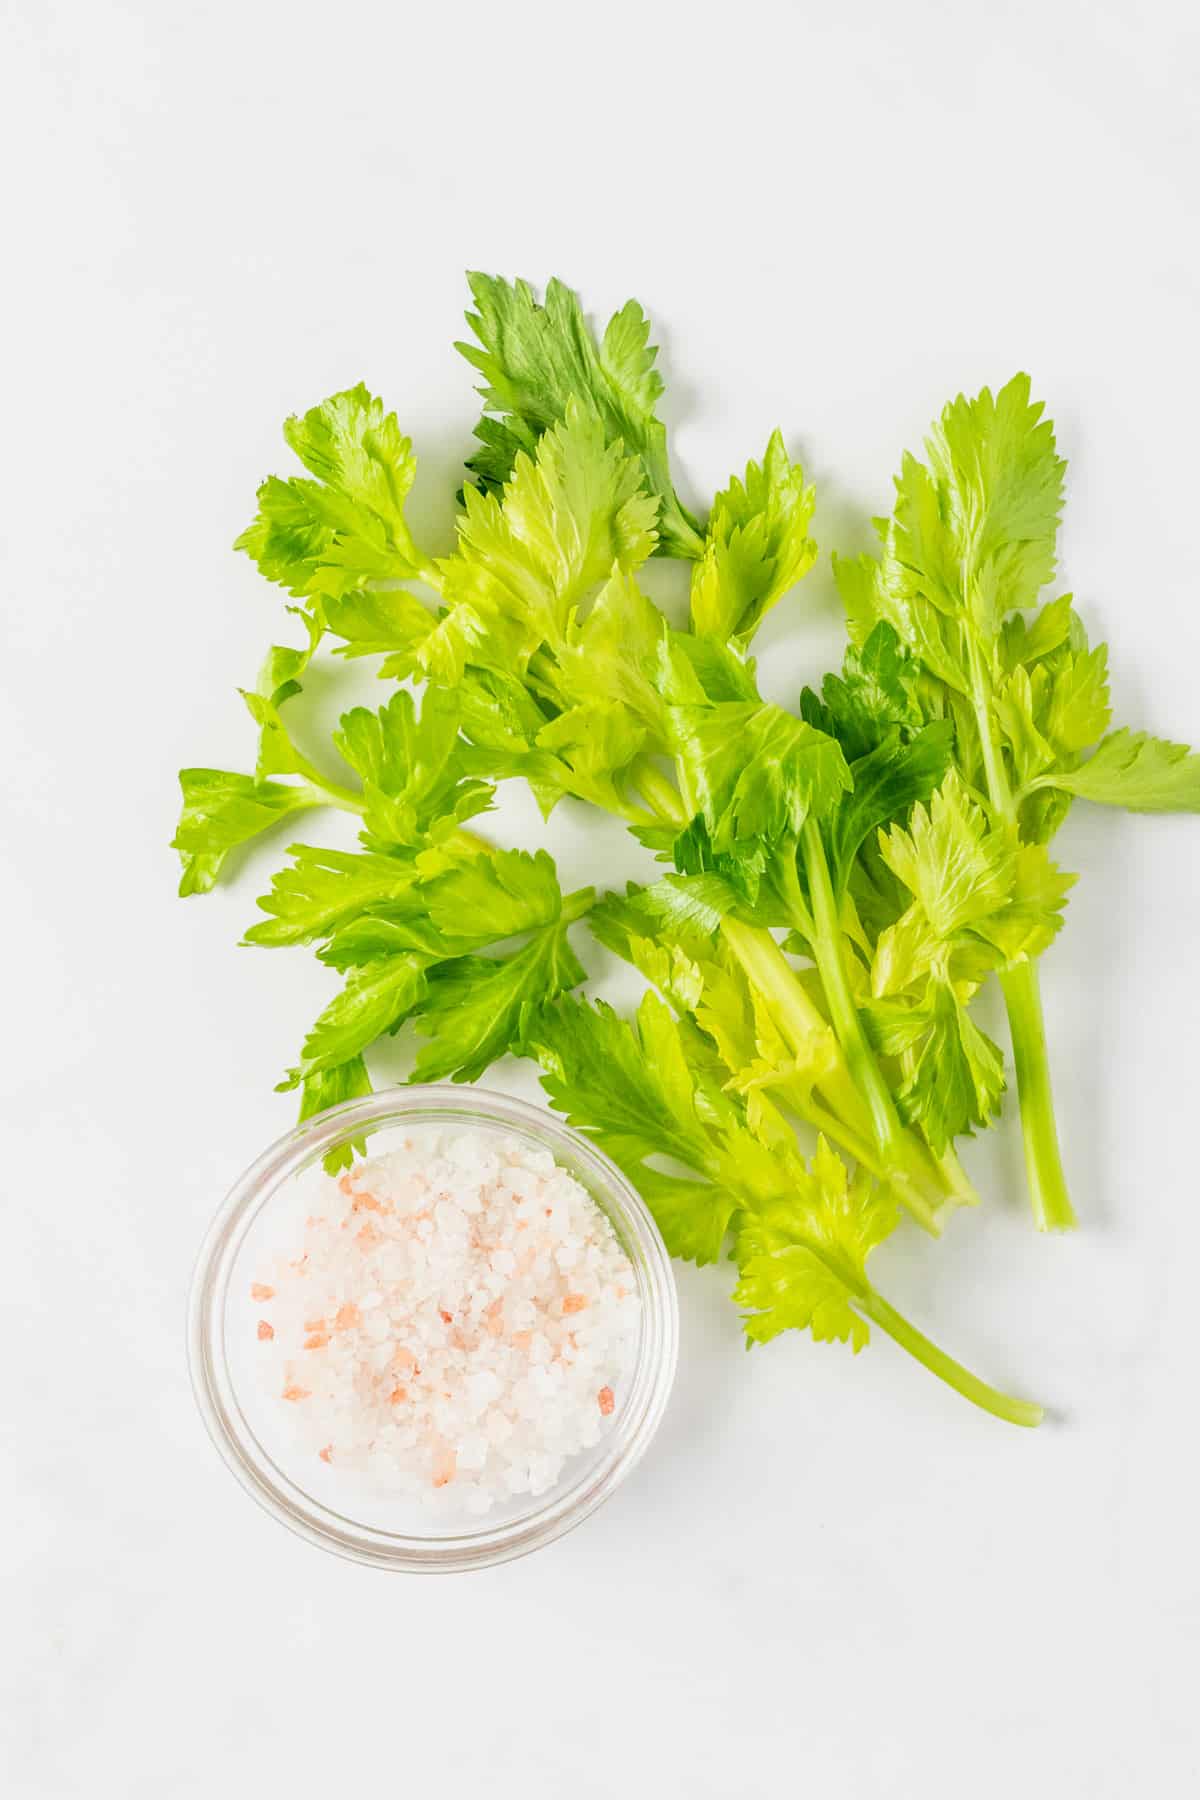 Celery Salt Ingredients